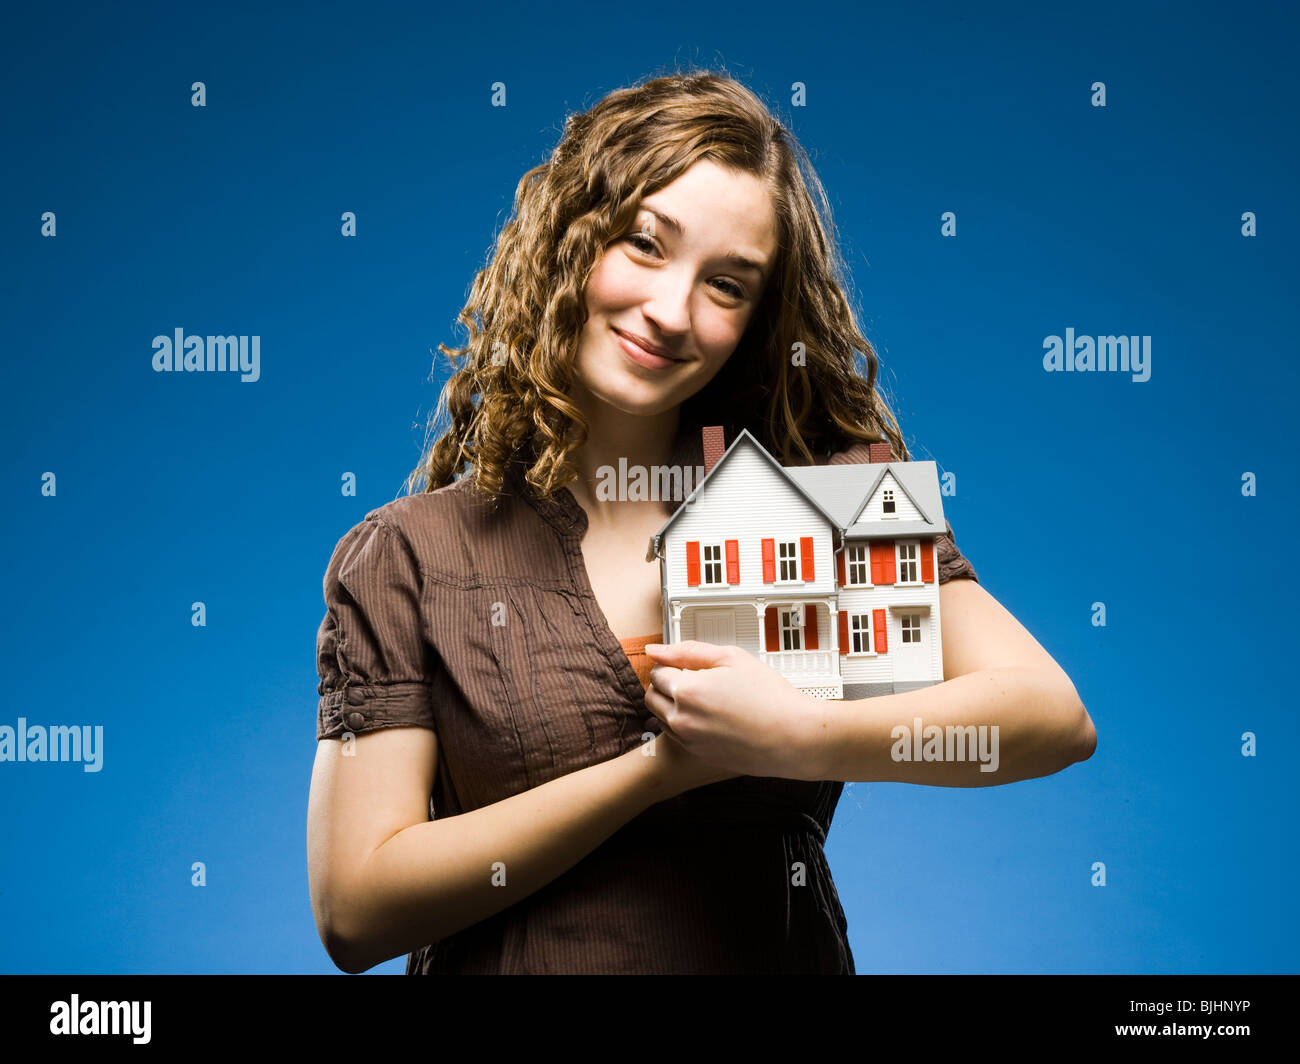 Femme tenant une miniature house Banque D'Images